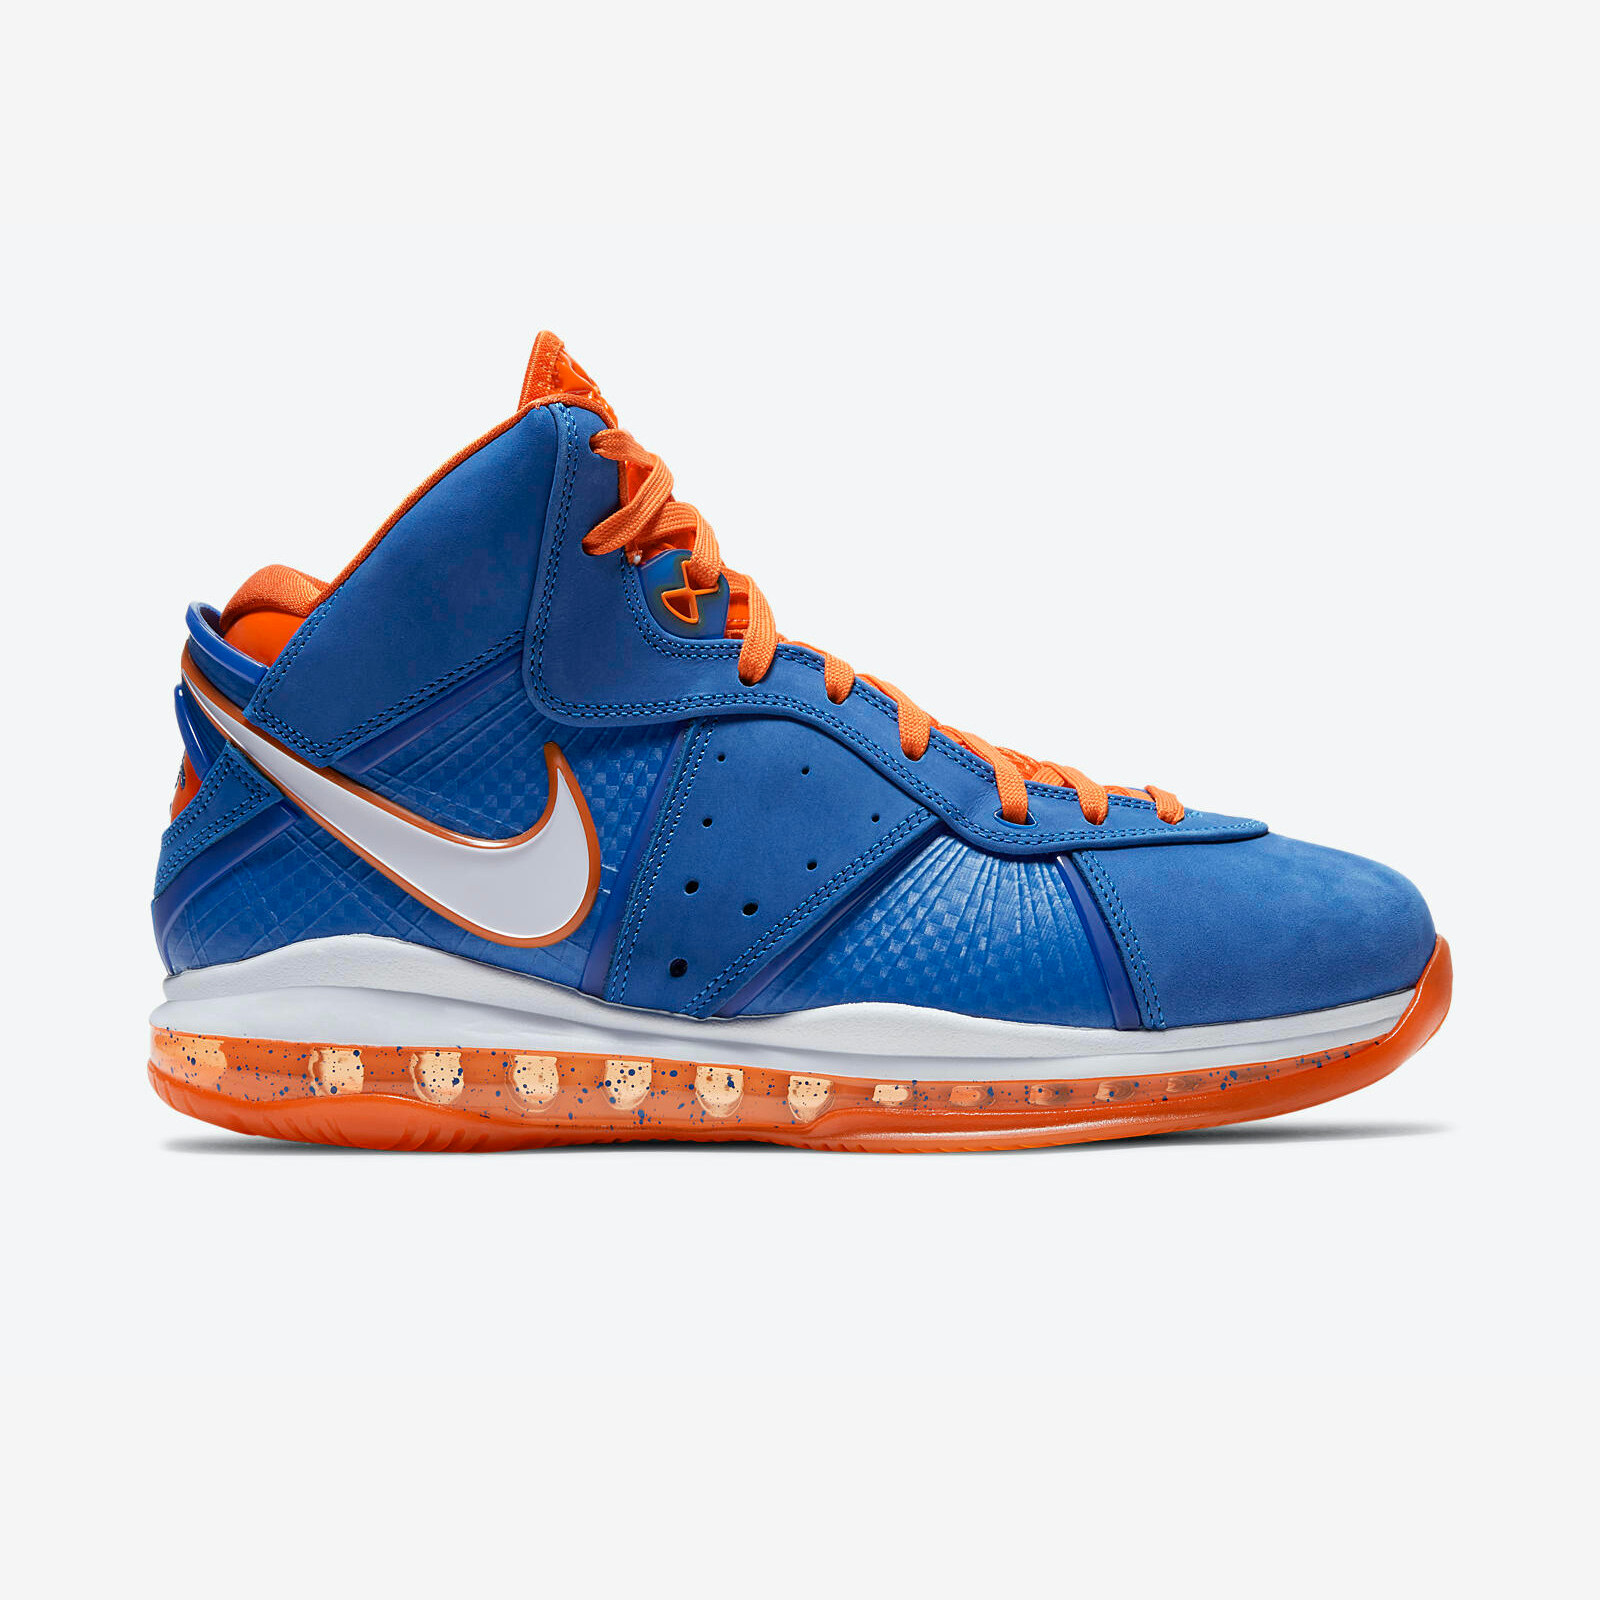 Nike LeBron 8
Blue / Orange